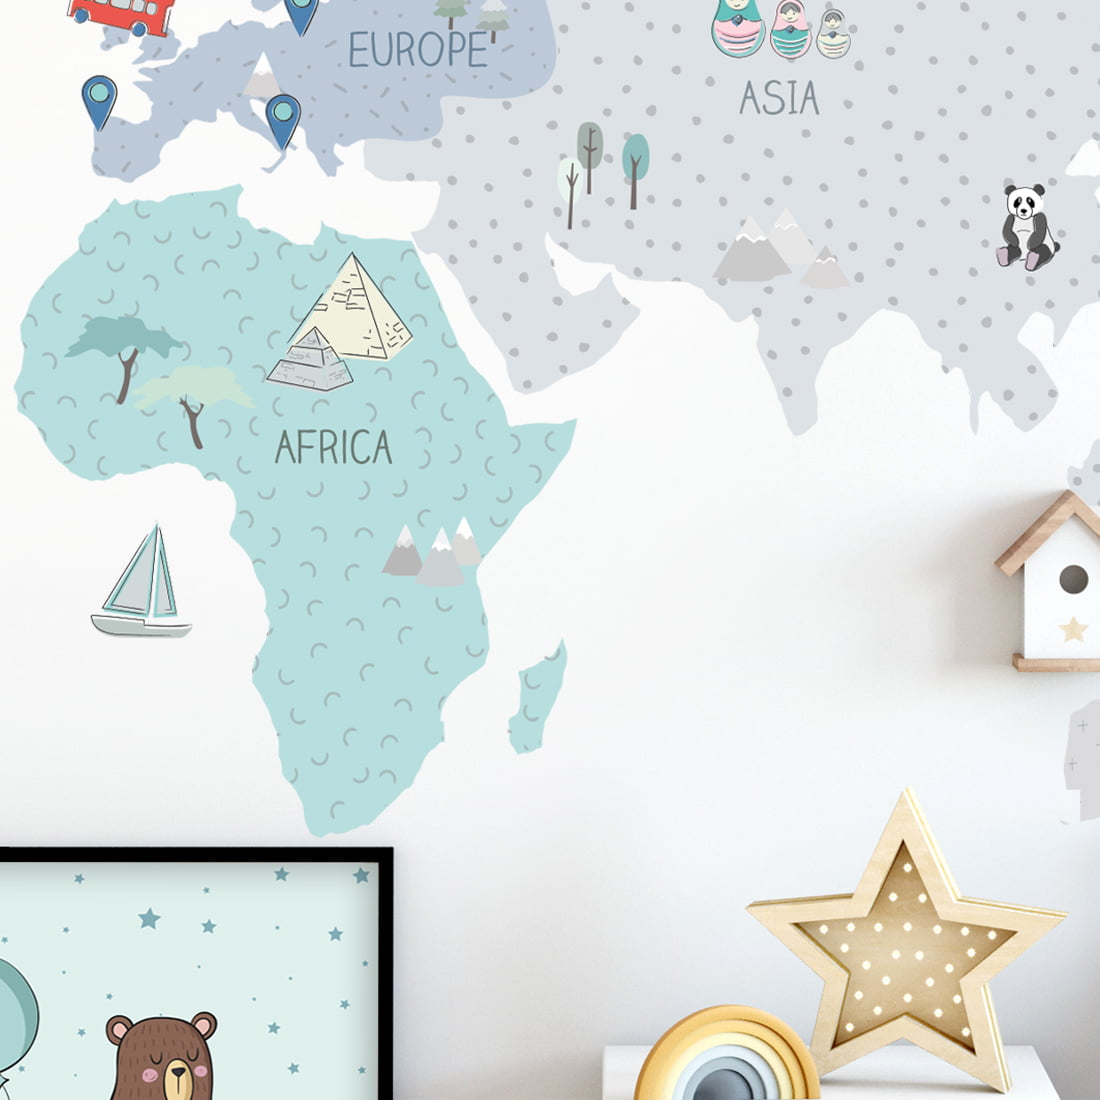 Wandsticker in minze pastell Farben mit Kontinenten Afrika, Europa und Asien unterschrieben auf Englisch